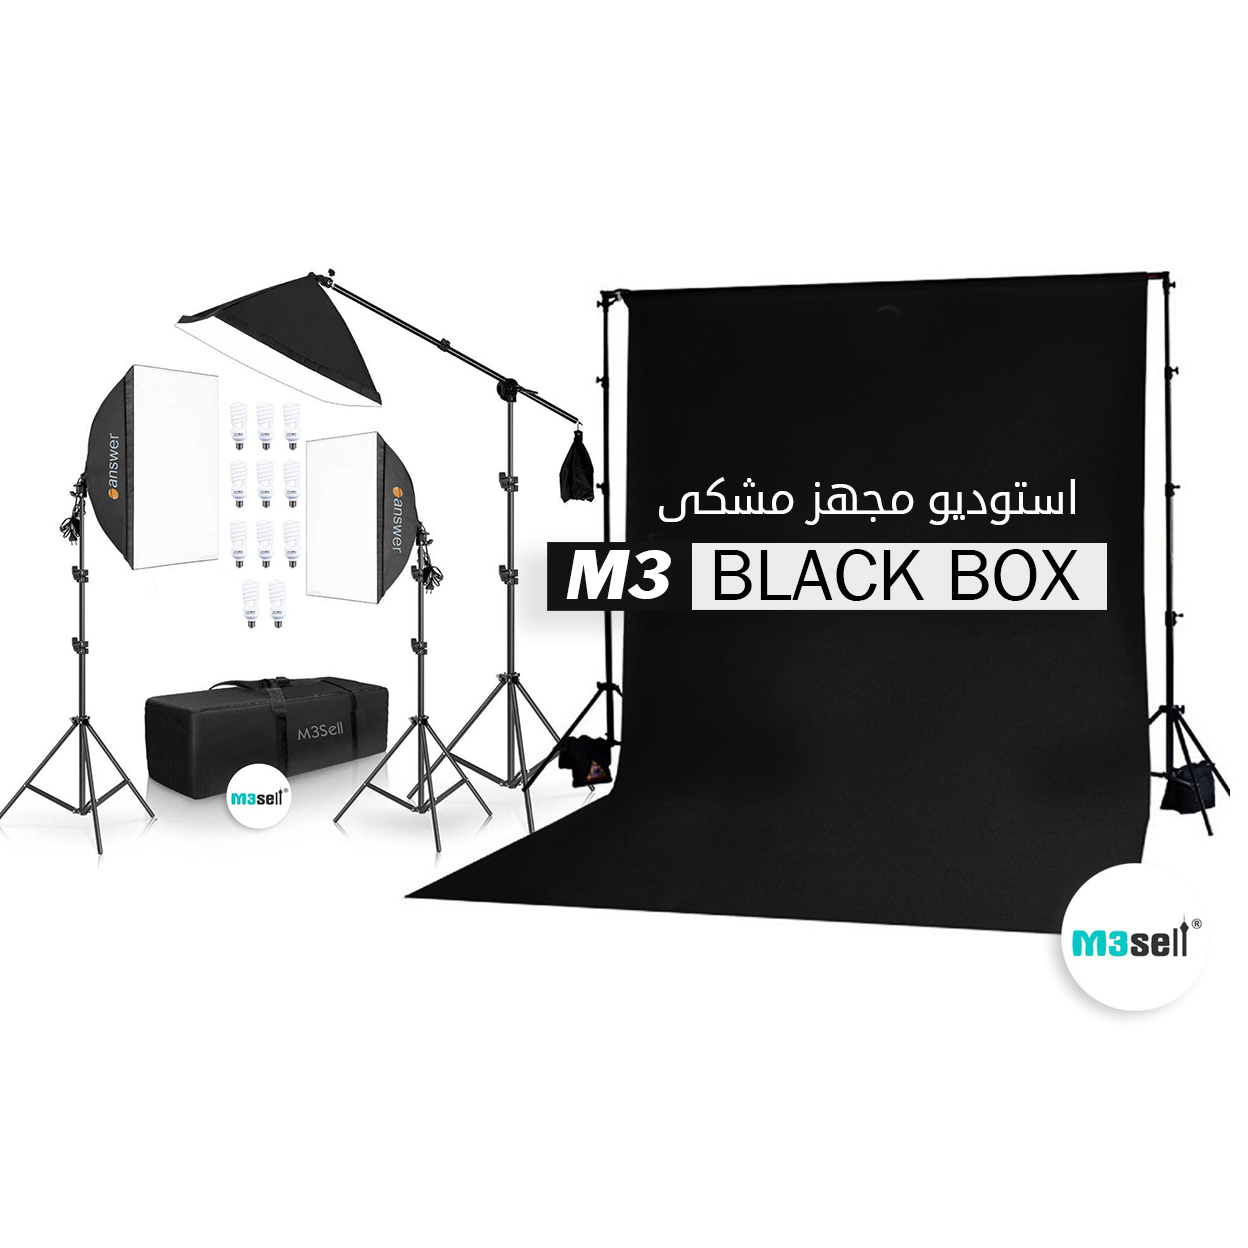 استودیو عکاسی مشکی Black Box ( استودیو مجهز مشکی به همراه پک کامل سافت باکس )